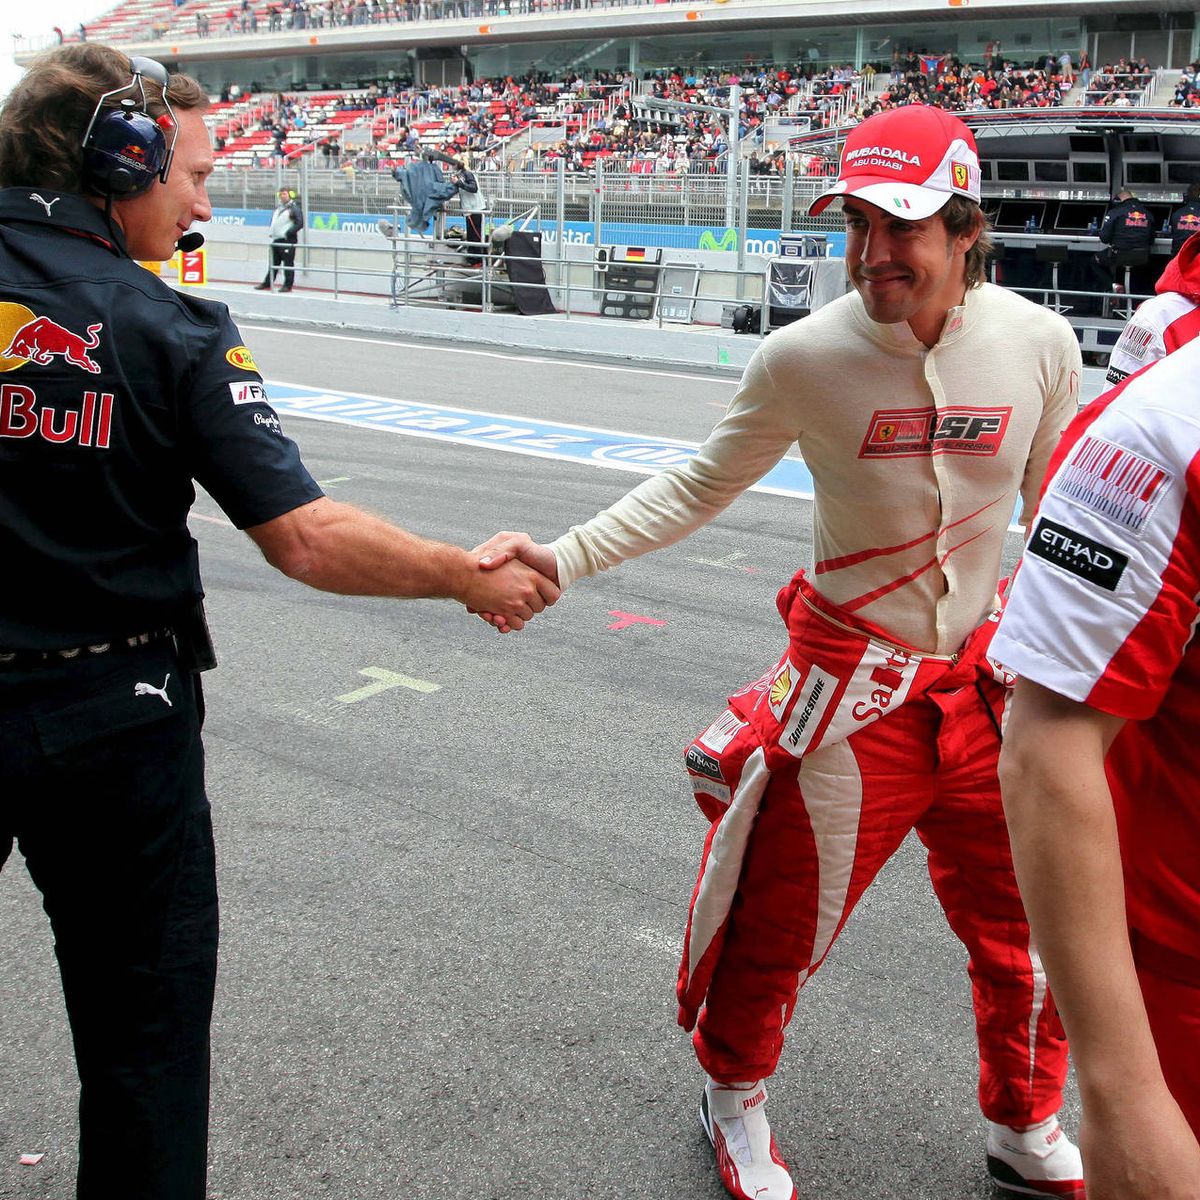 Fernando Alonso ilusiona en su debut y en Red Bull avisan del